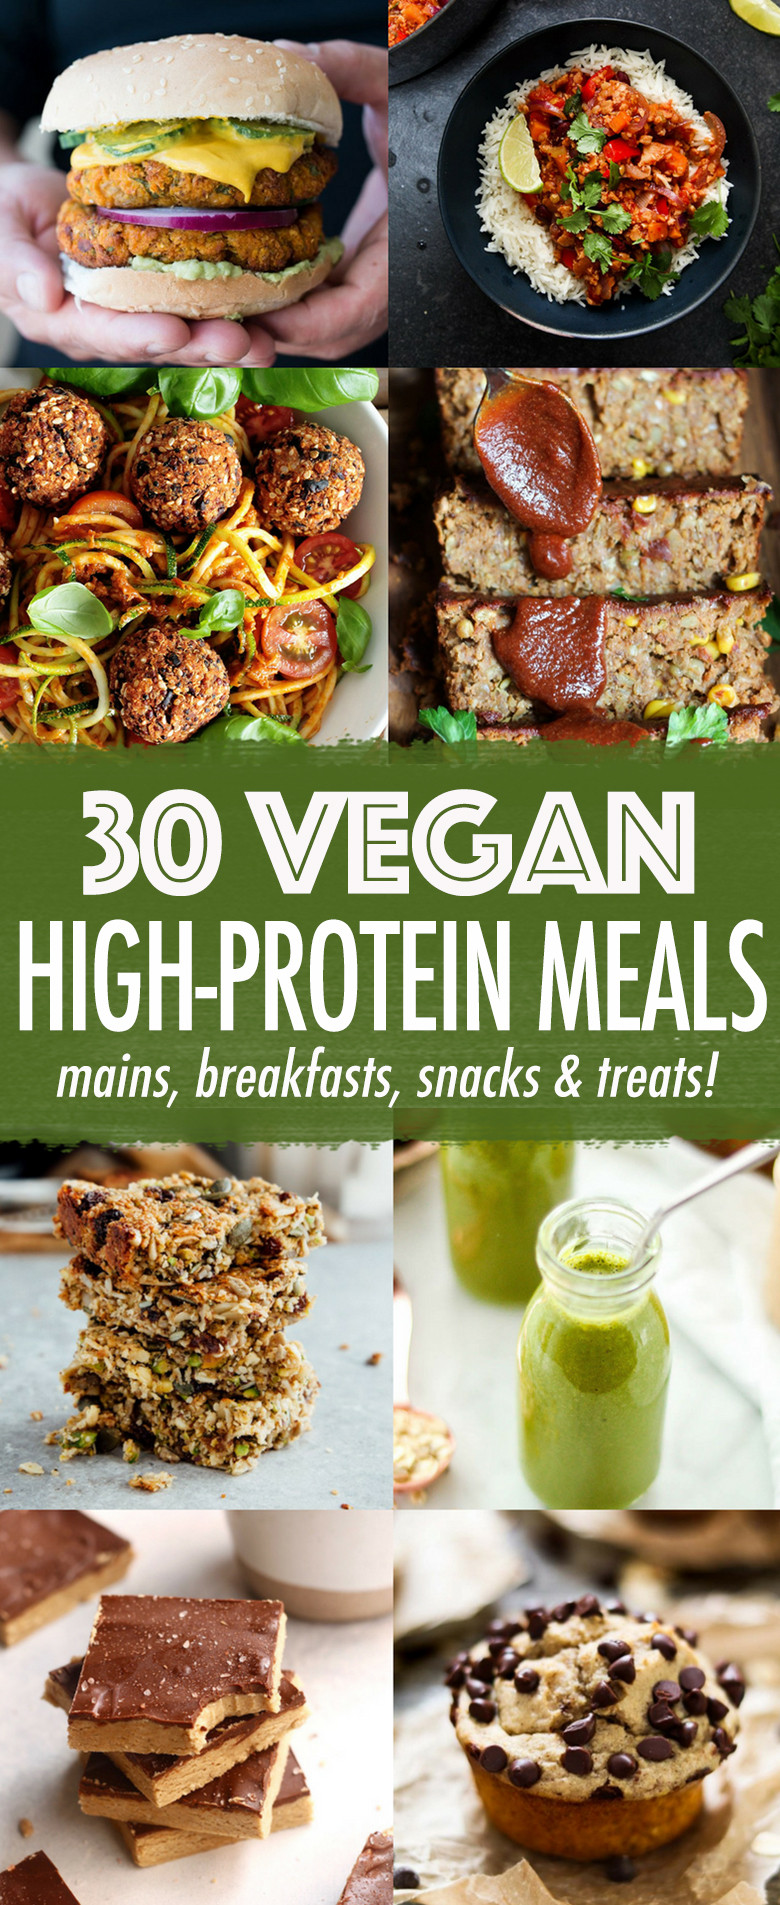 High Protein Vegan Dinner
 30 High protein Vegan Meals Wallflower Kitchen